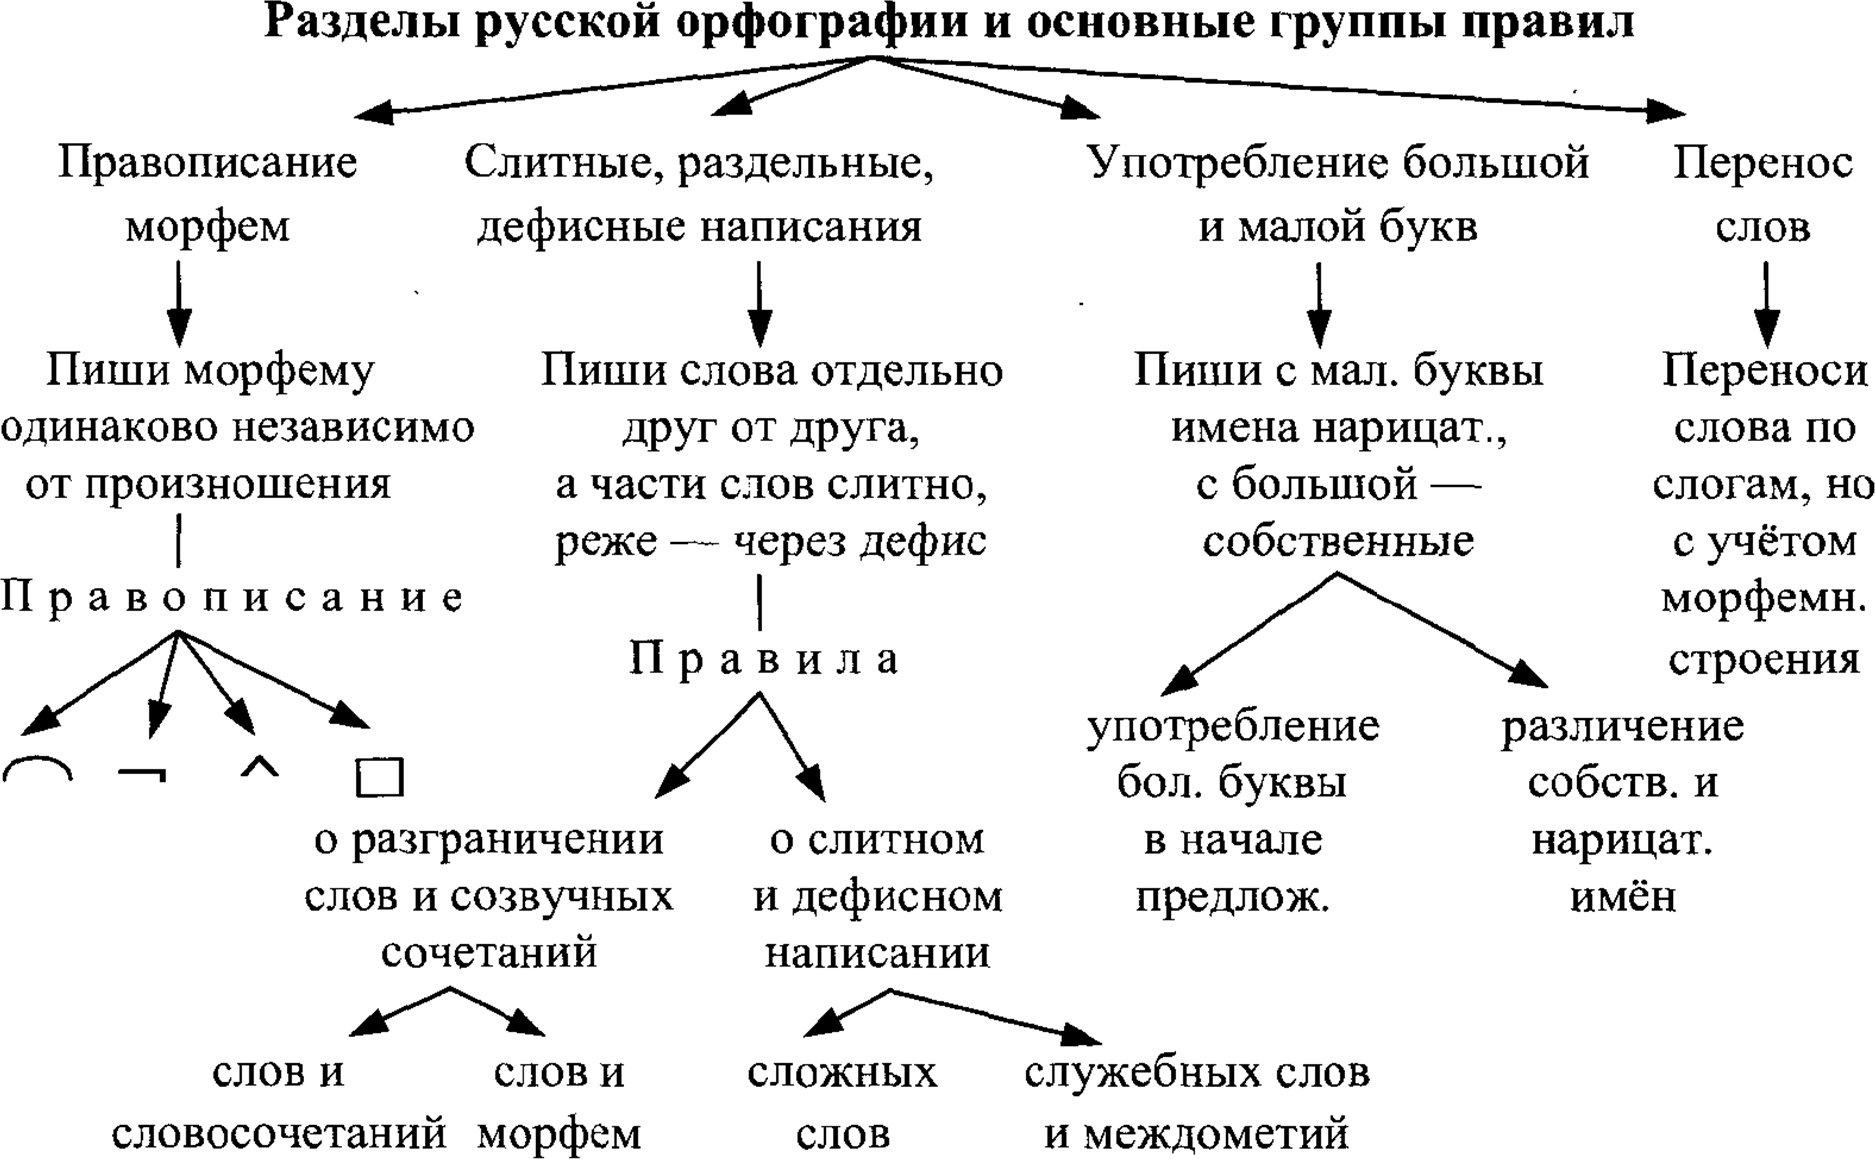 Разделы русской орфографии и основные группы правил